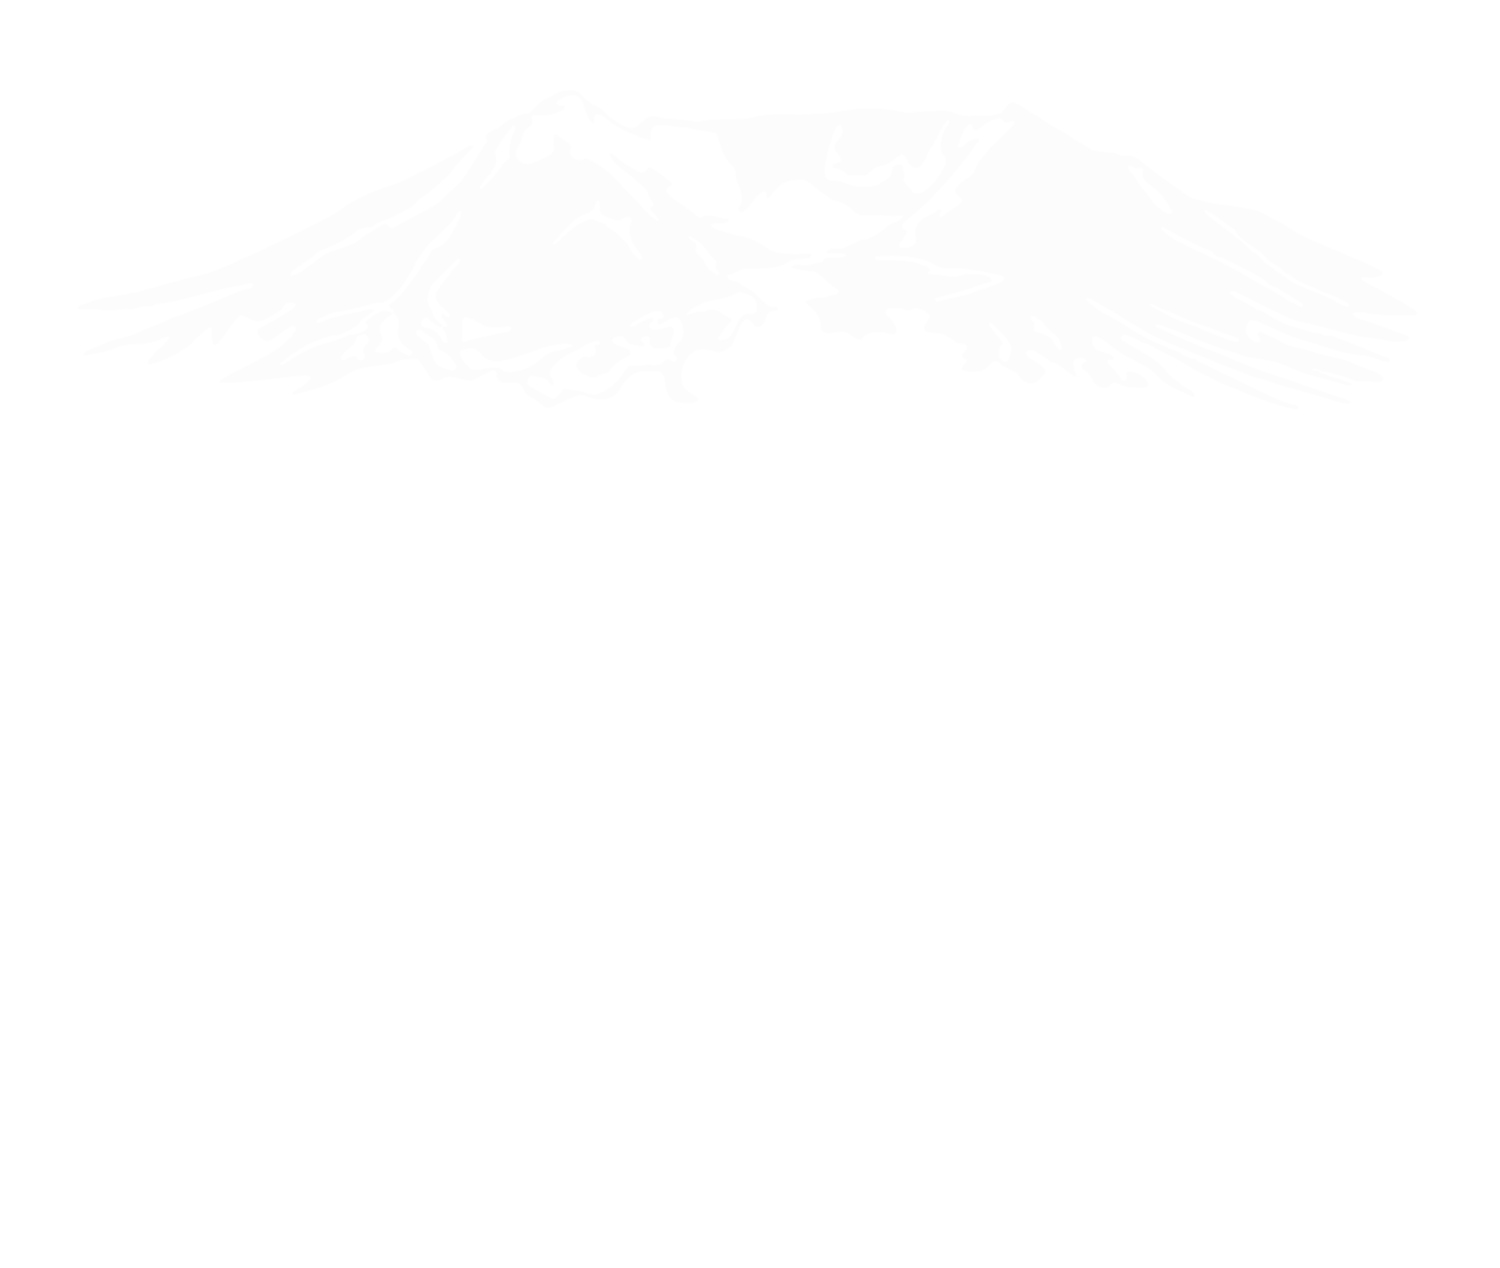 Spine Align Northwest